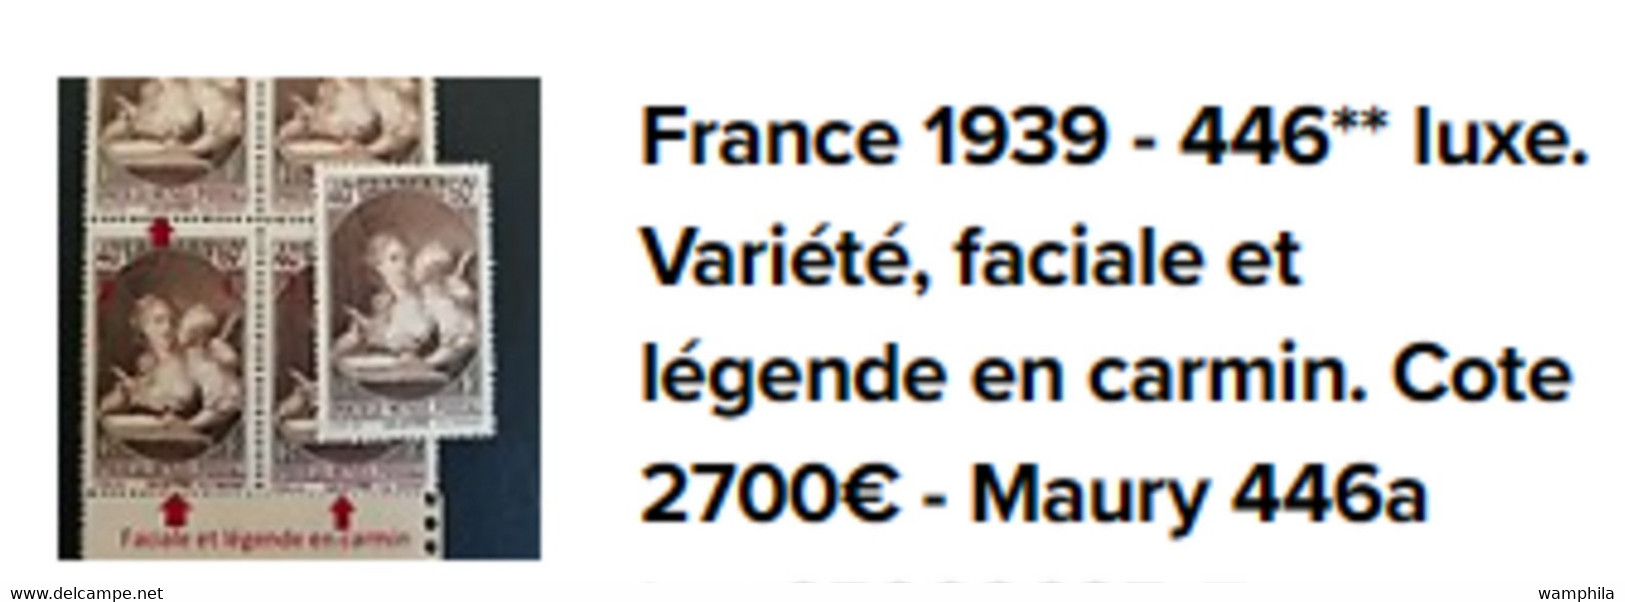 France 1939. N°446** bloc de 4 avec faciale et légende en carmin. Cote 2700€